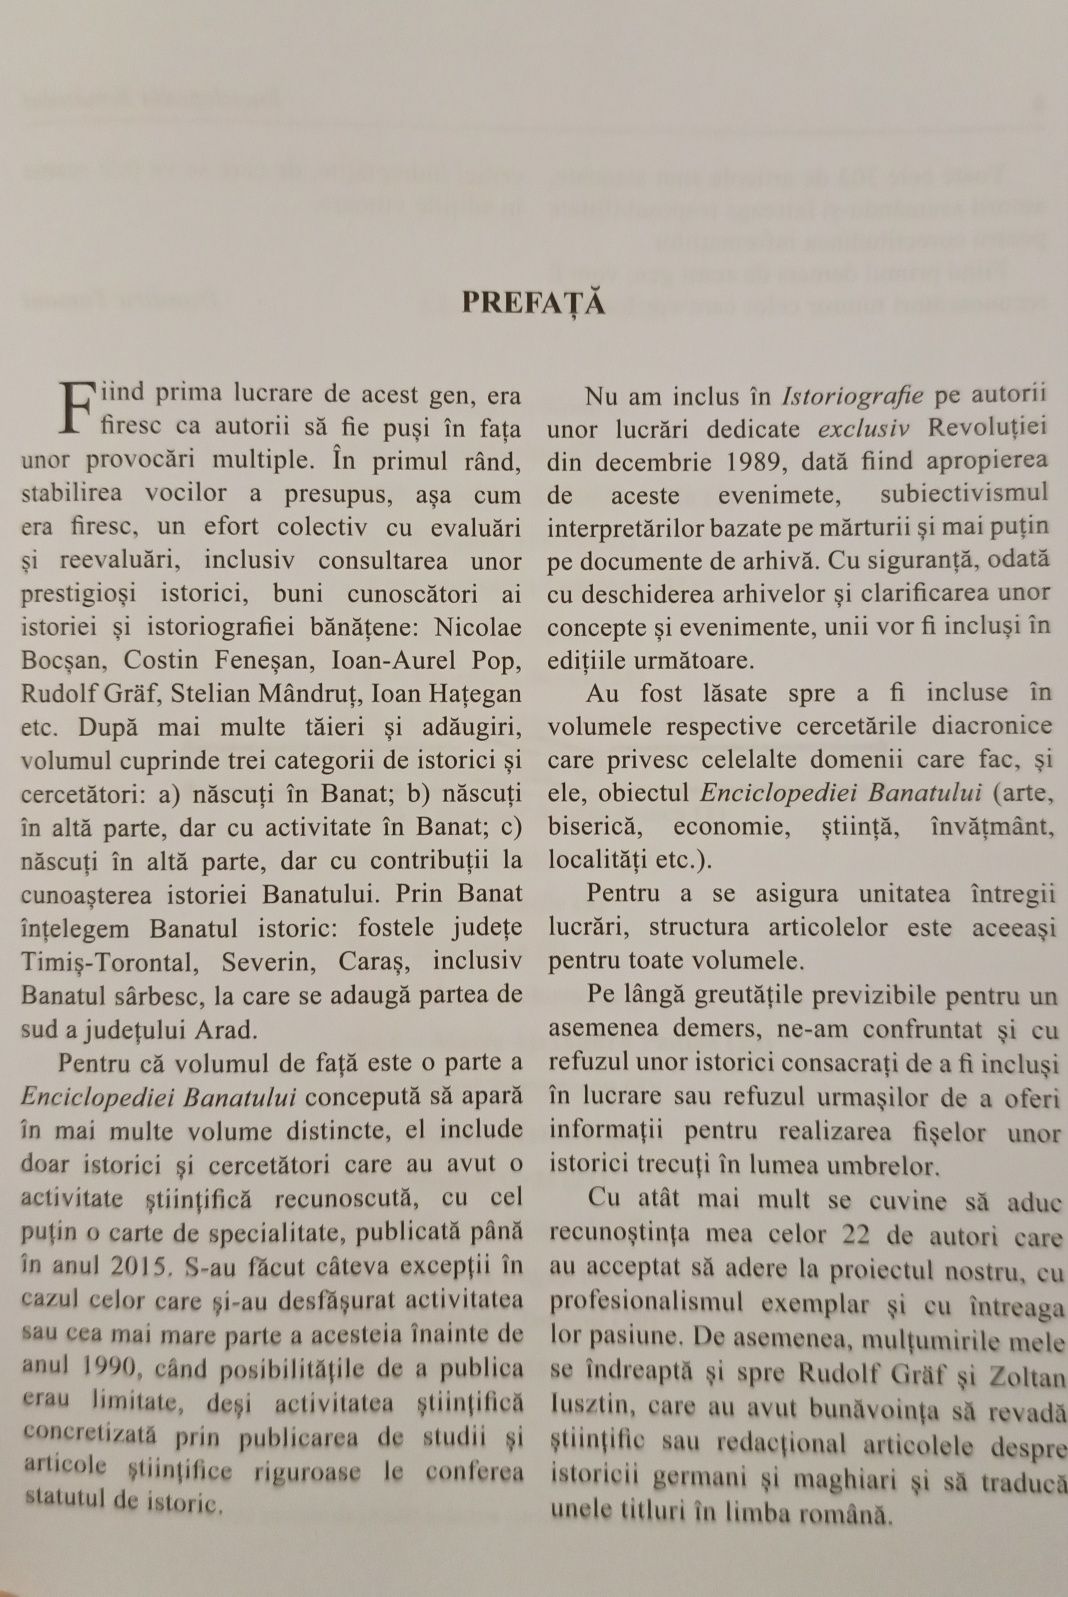 Enciclopedia Banatului- Dumitru Tomoni, Academia Romana. Impecabil!